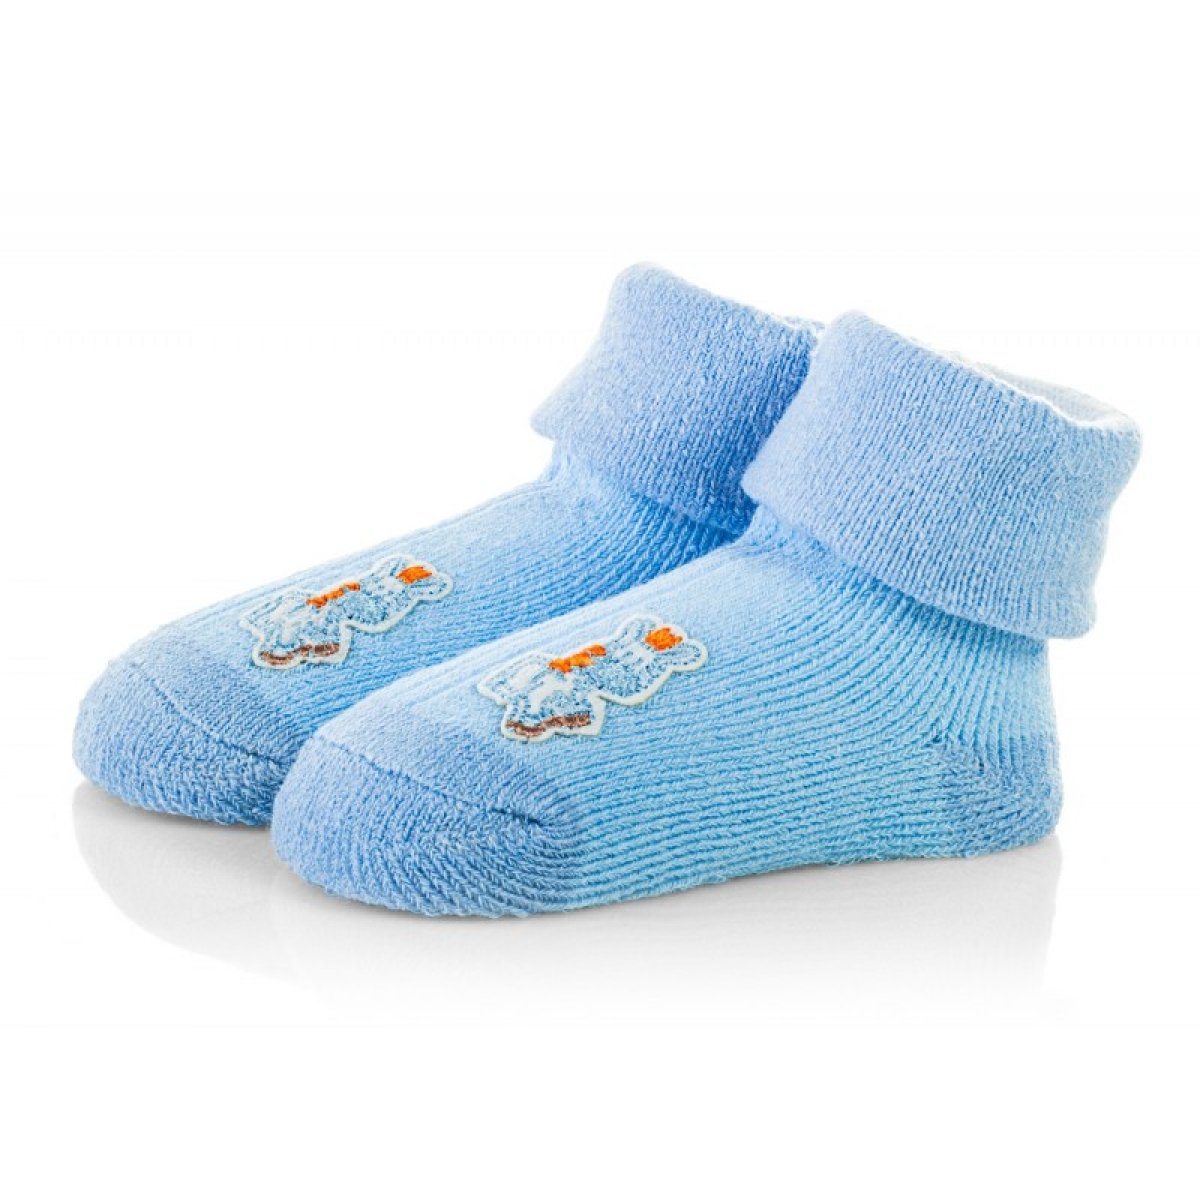 Kojenecké ponožky 6-12 měsíců - TBS046 - modrá